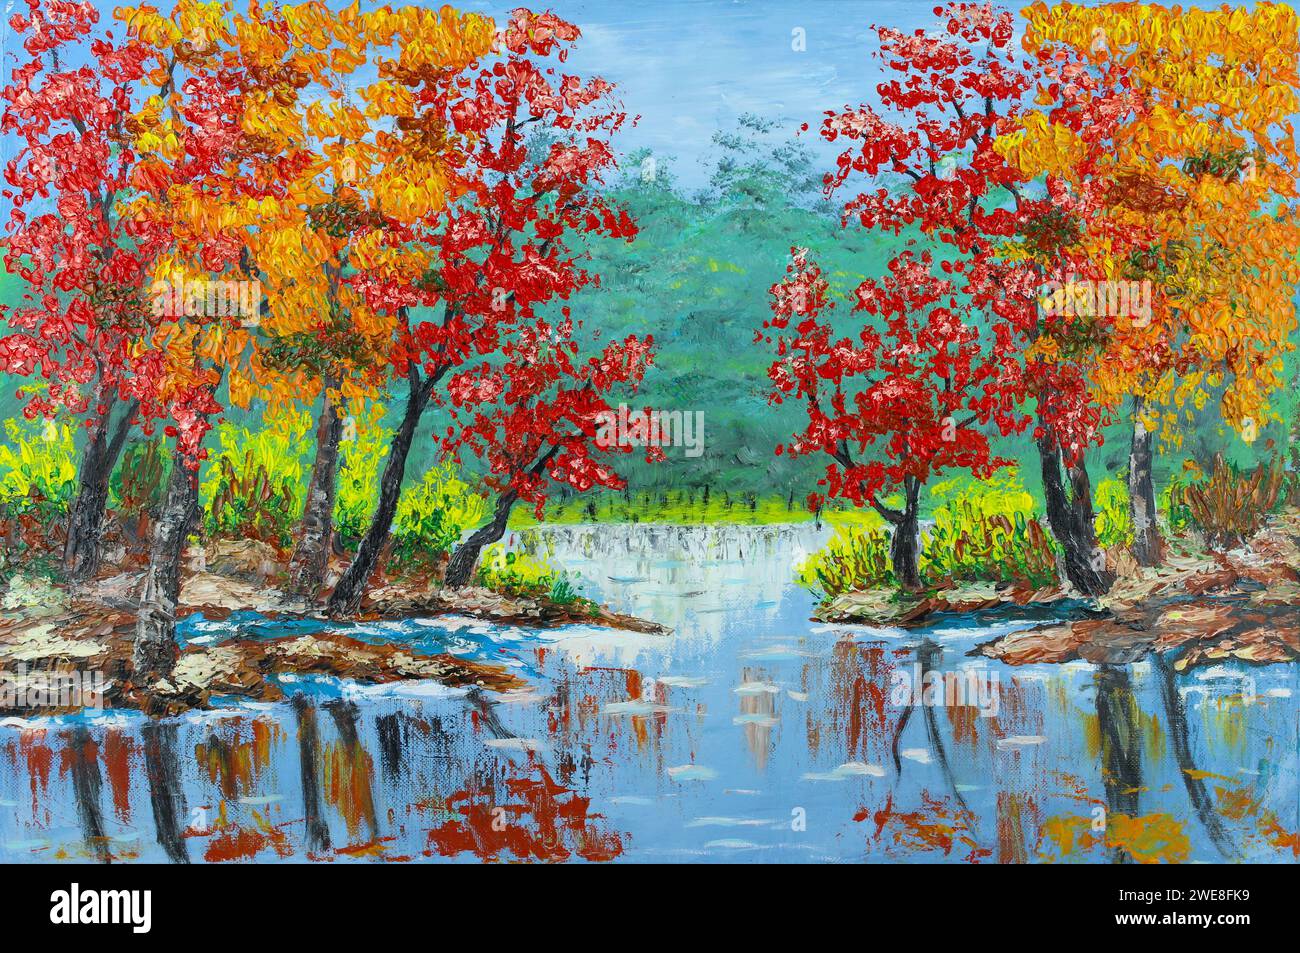 Feuilles d'automne colorées sur les arbres à côté du petit étang dans l'ountryside Banque D'Images